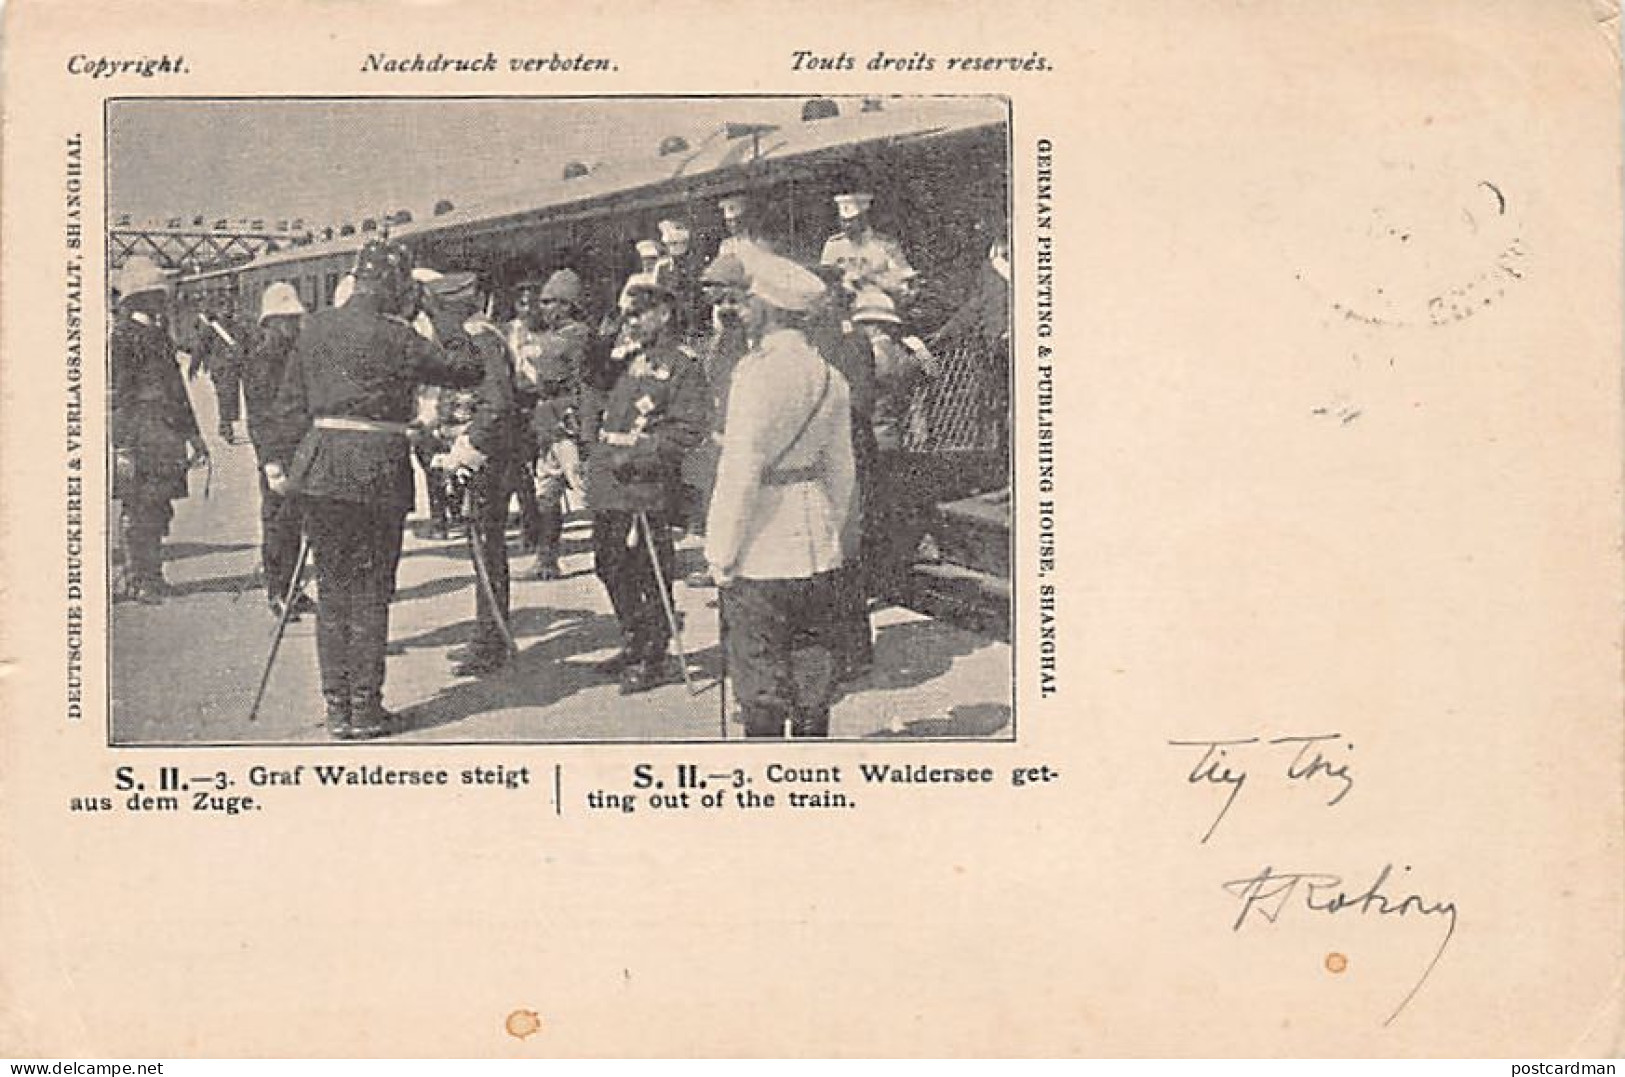 China - SHANGHAI - Count Waldersee Getting Out Of The Train - Publ. Deutsche Druckerei & Verlagsanstalt S. II - 3 - Chine